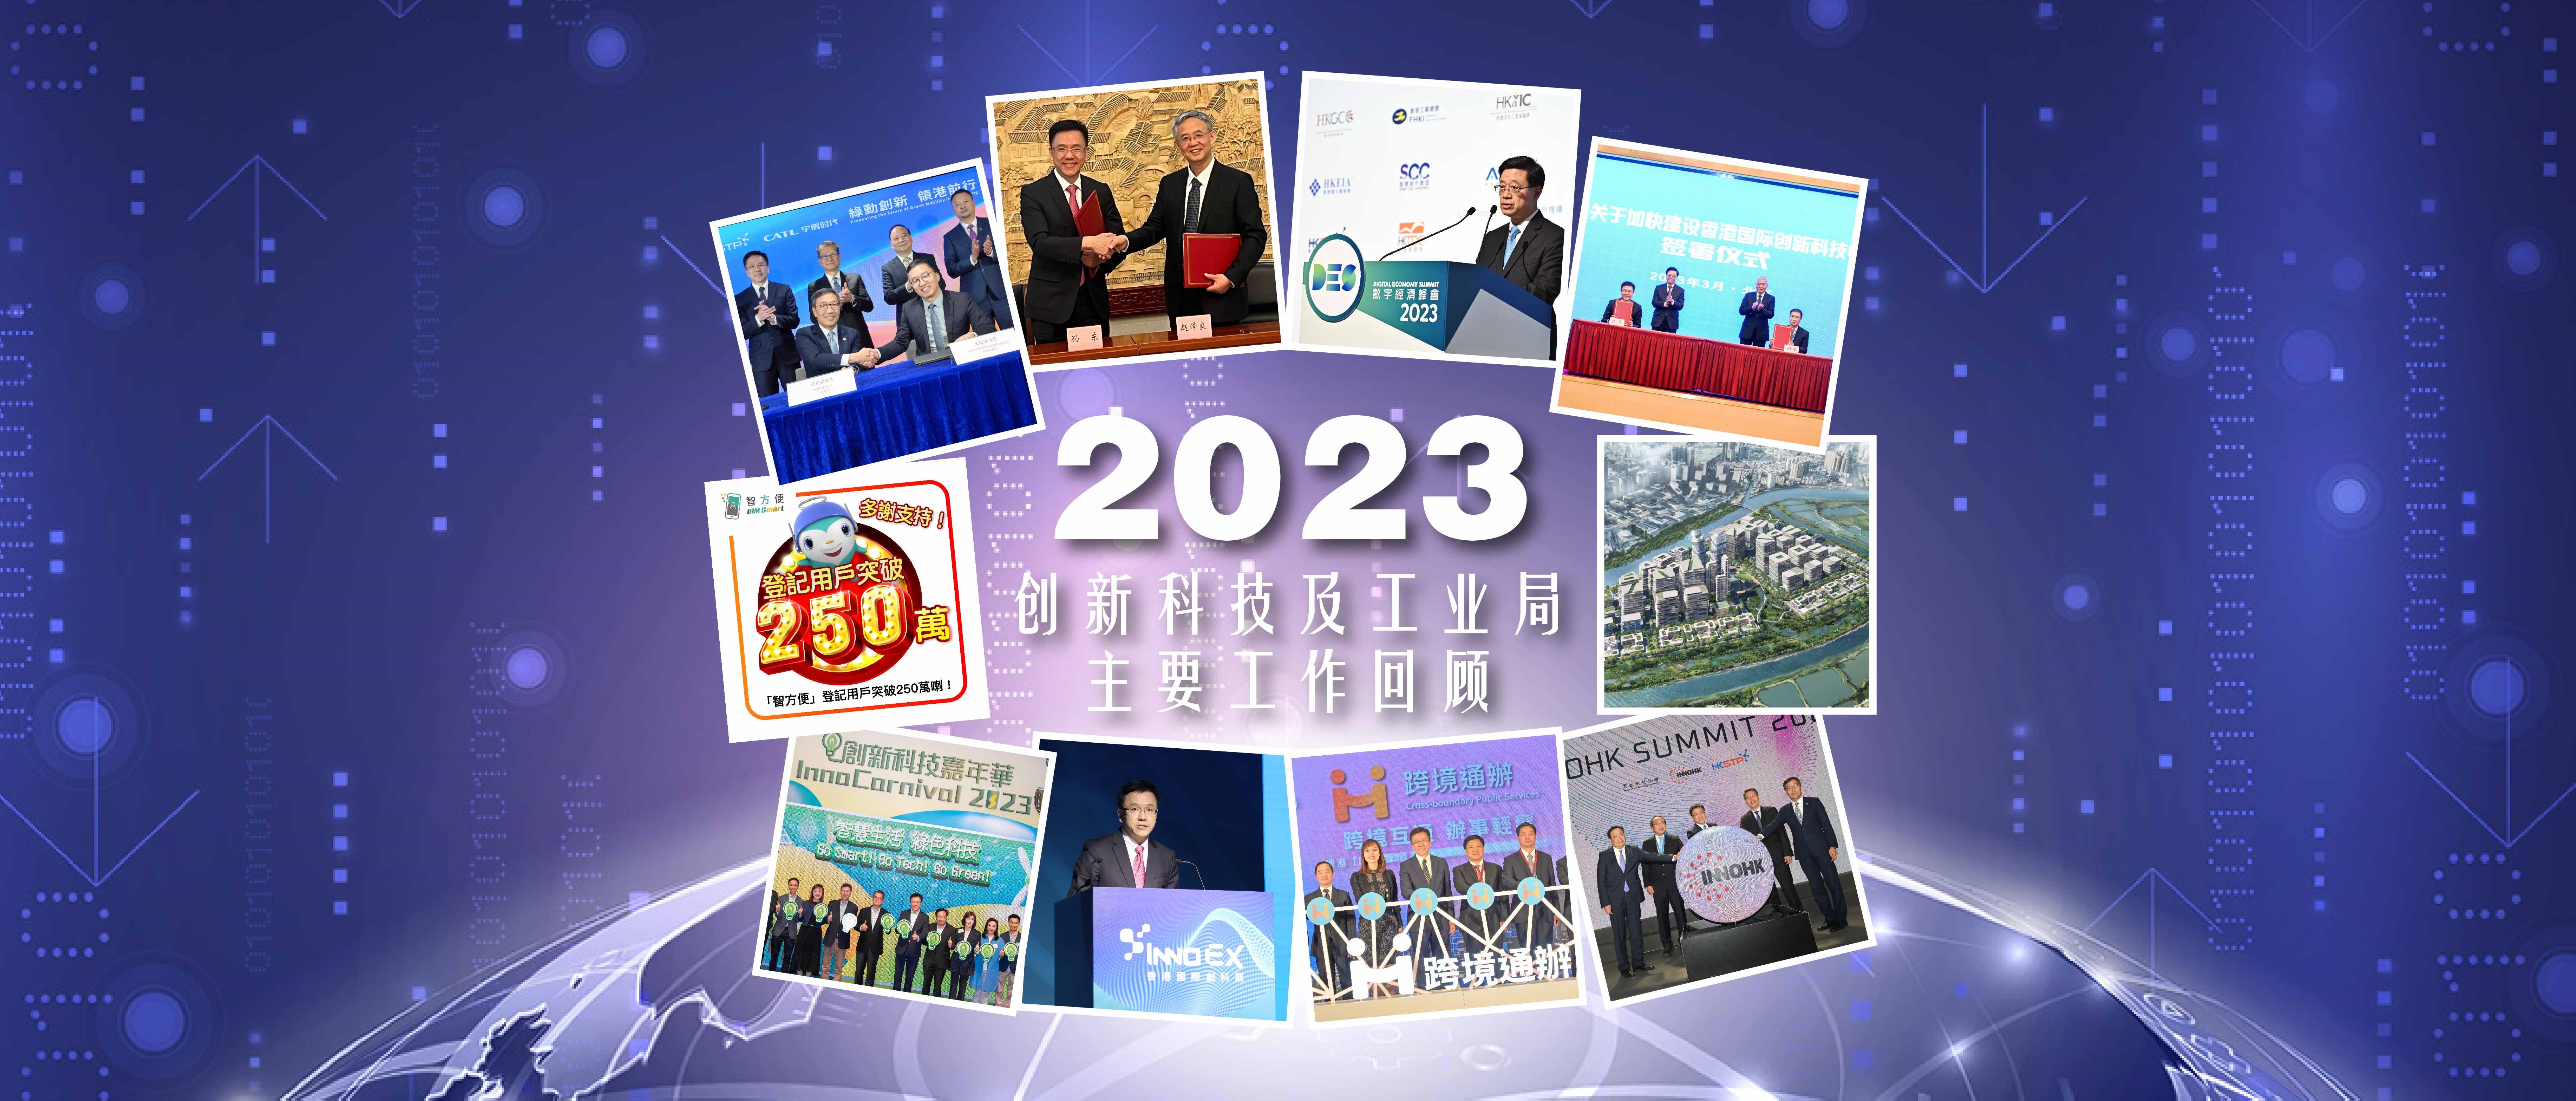 2023年创新科技及工业局主要工作回顾